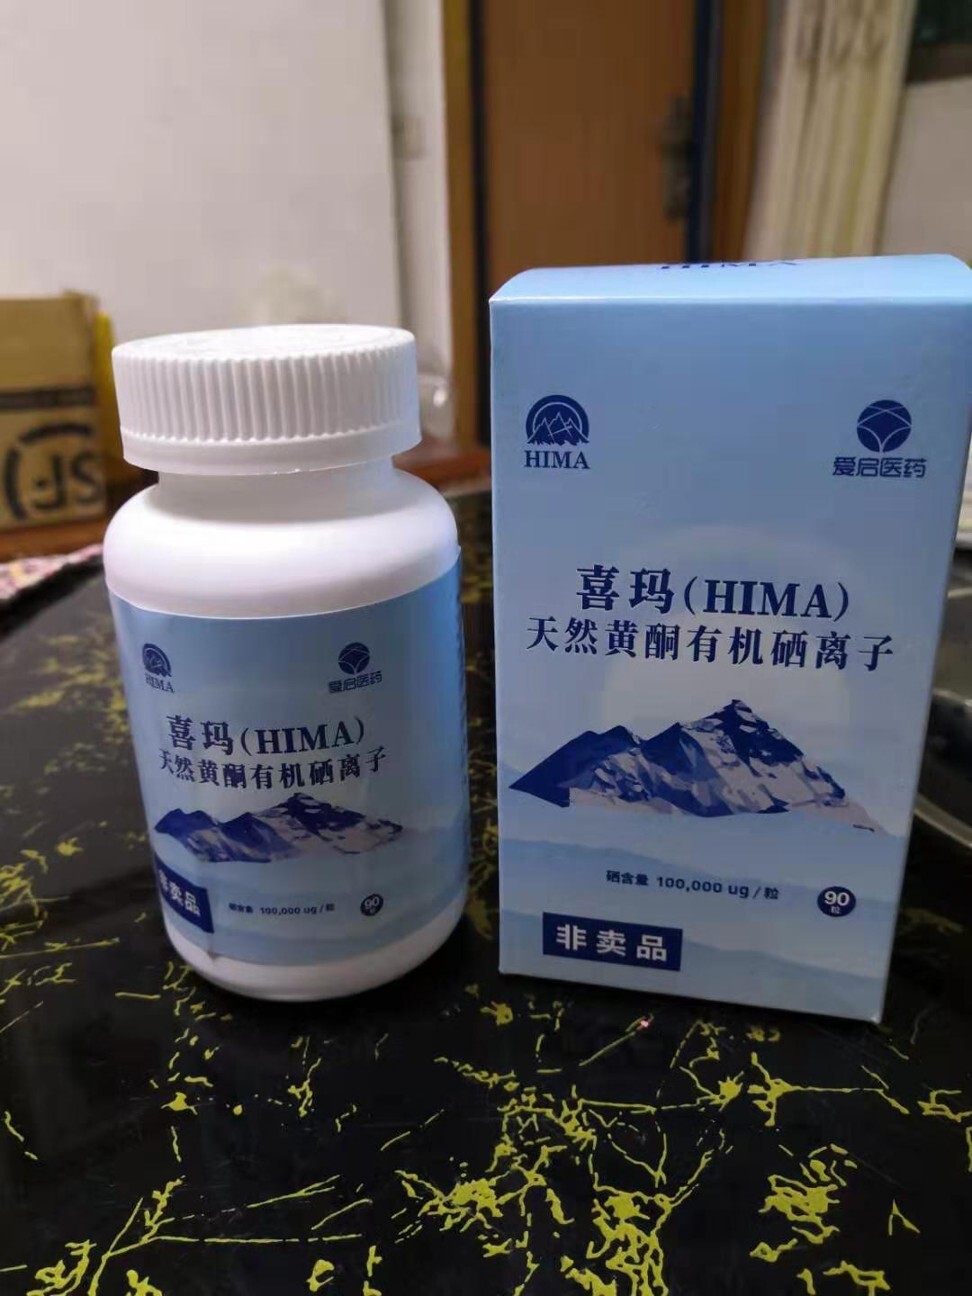 HIMA is an experimental cancer drug produced by Shanghai Spark Pharmaceutical. Photo: Handout